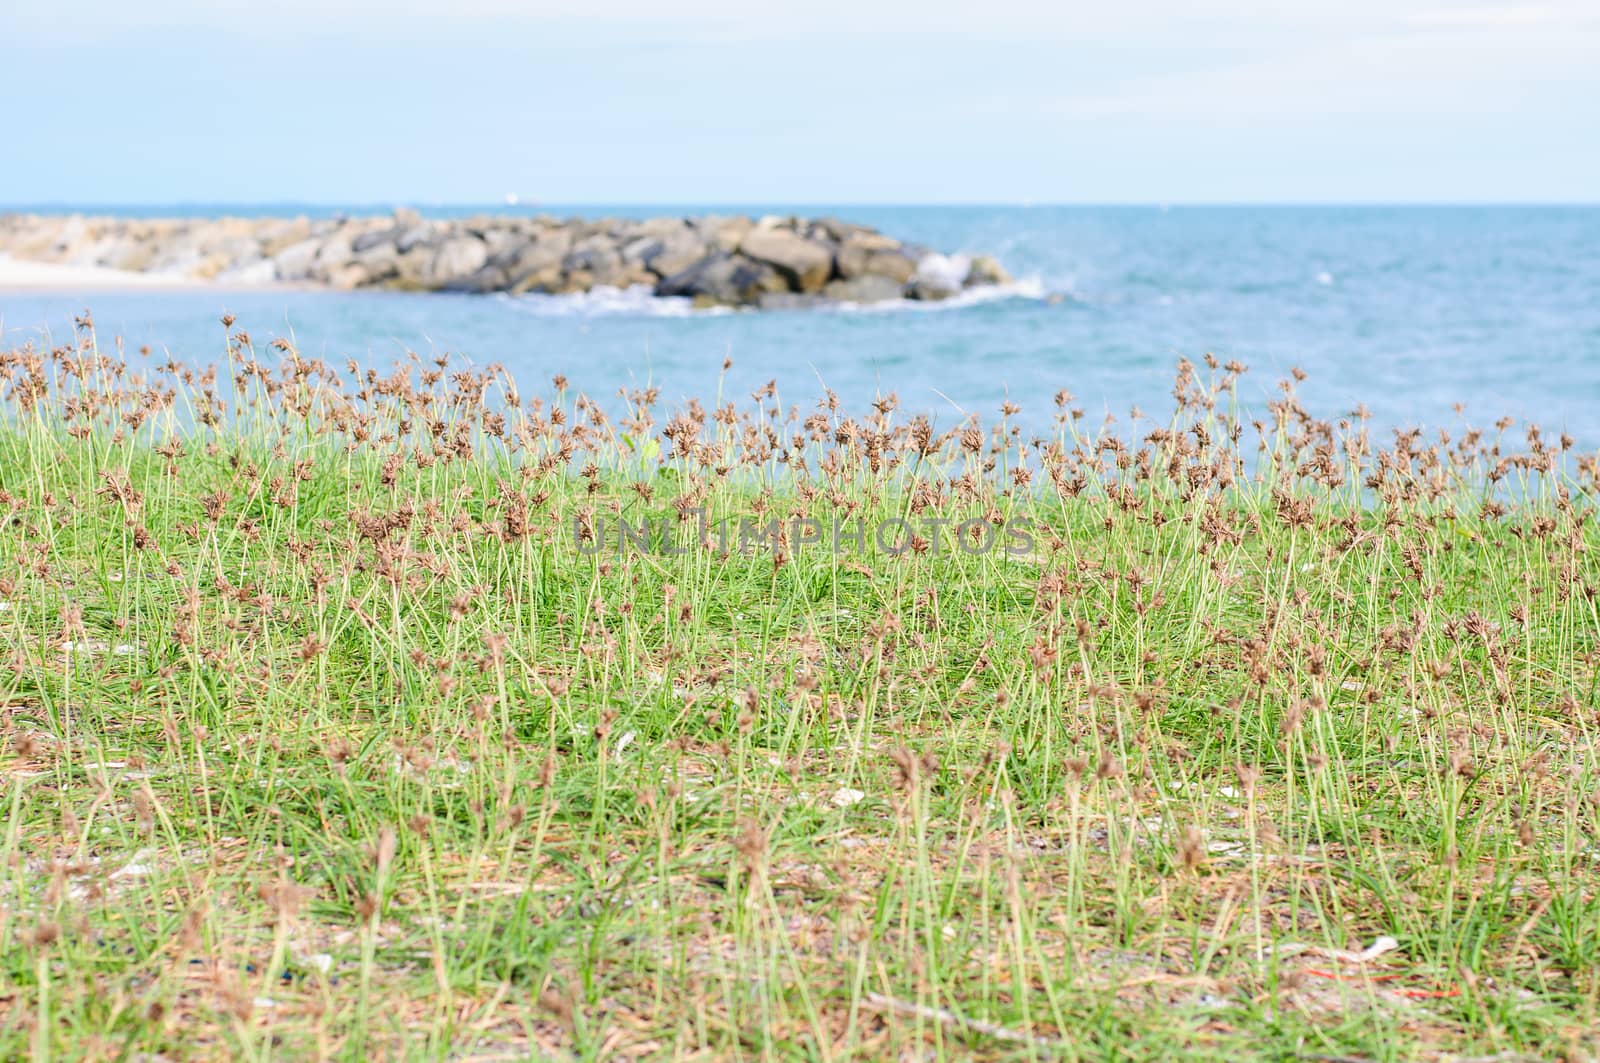 Grass beside the sea by Sorapop